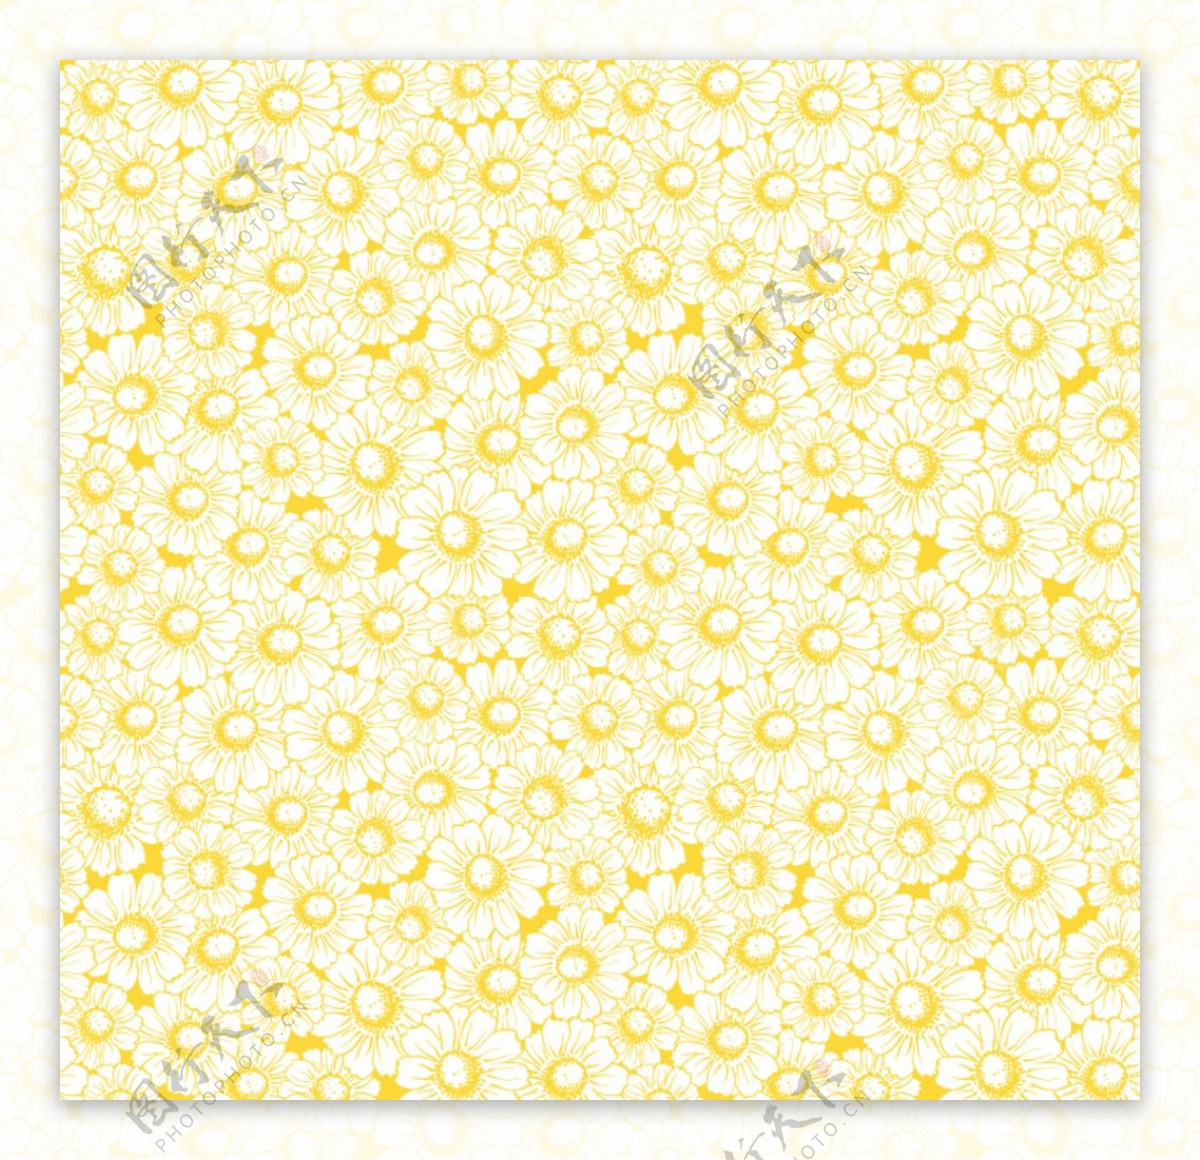 黄色雏菊碎花背景矢量素材